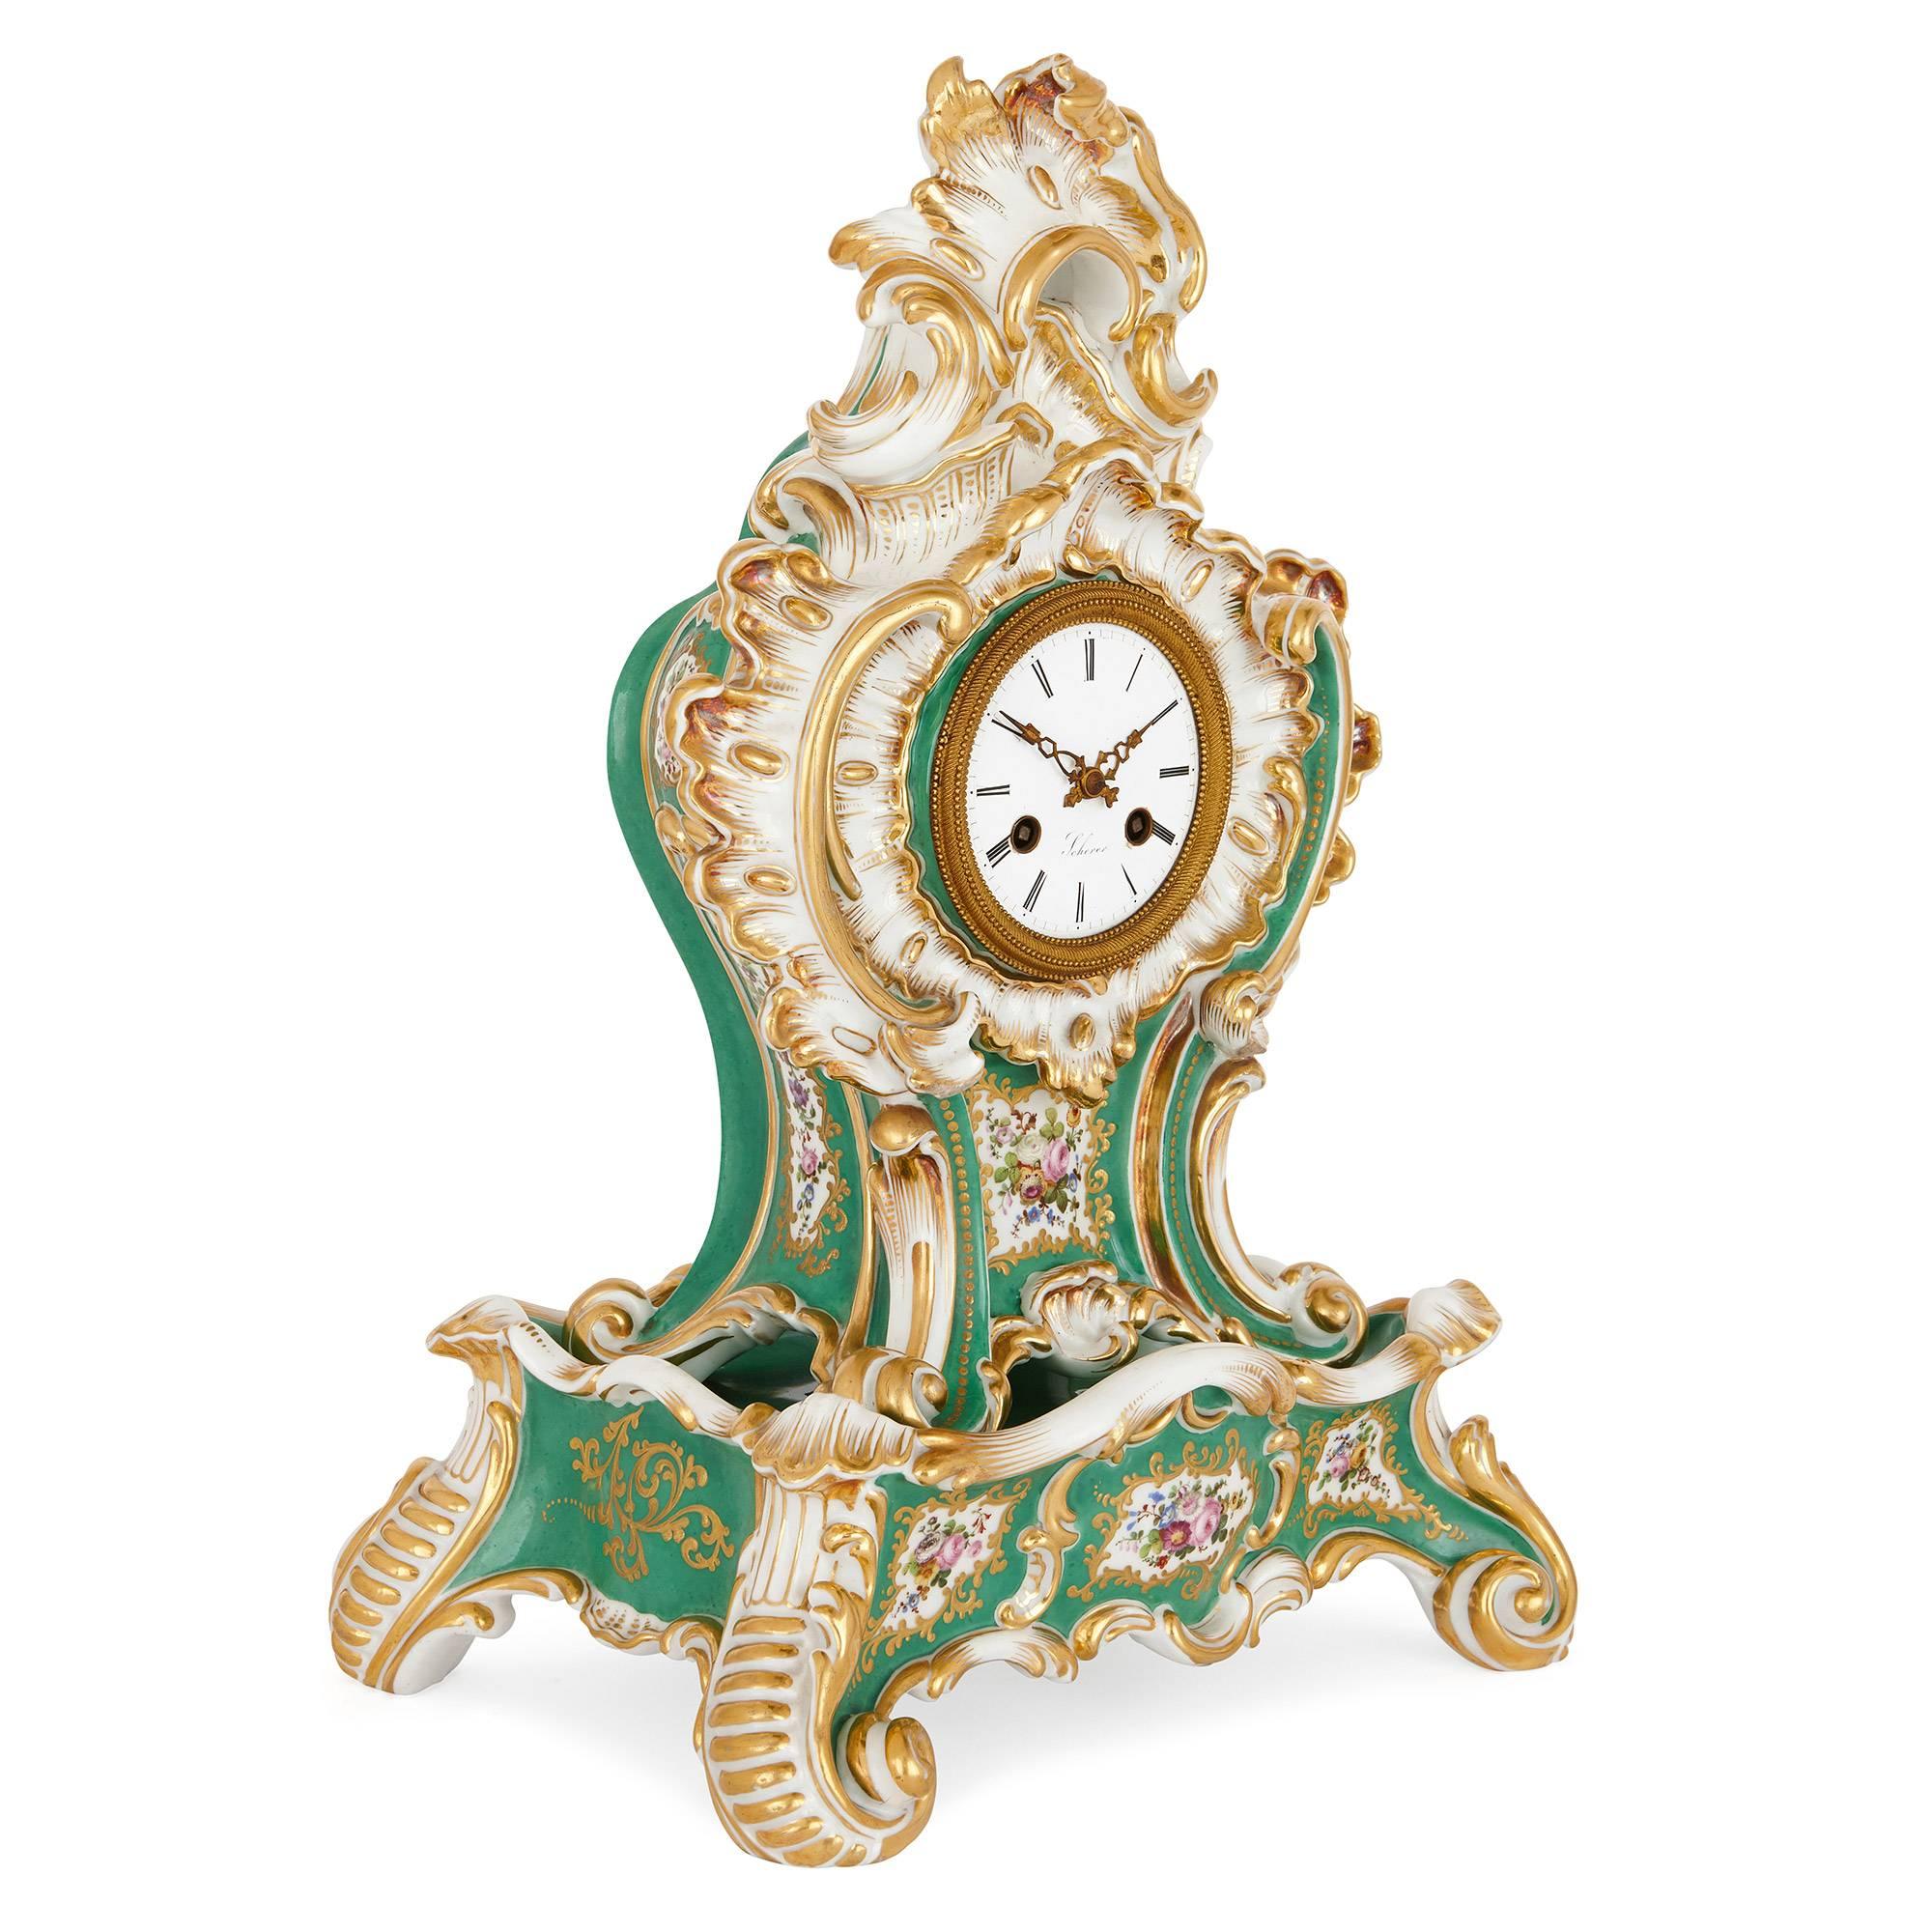 Cette horloge de cheminée en porcelaine ancienne témoigne de la nostalgie du XIXe siècle pour les arts décoratifs délicatement élégants du roi Louis XV, également connus sous le nom de style rococo. 

Fabriquée par le célèbre artiste porcelainier